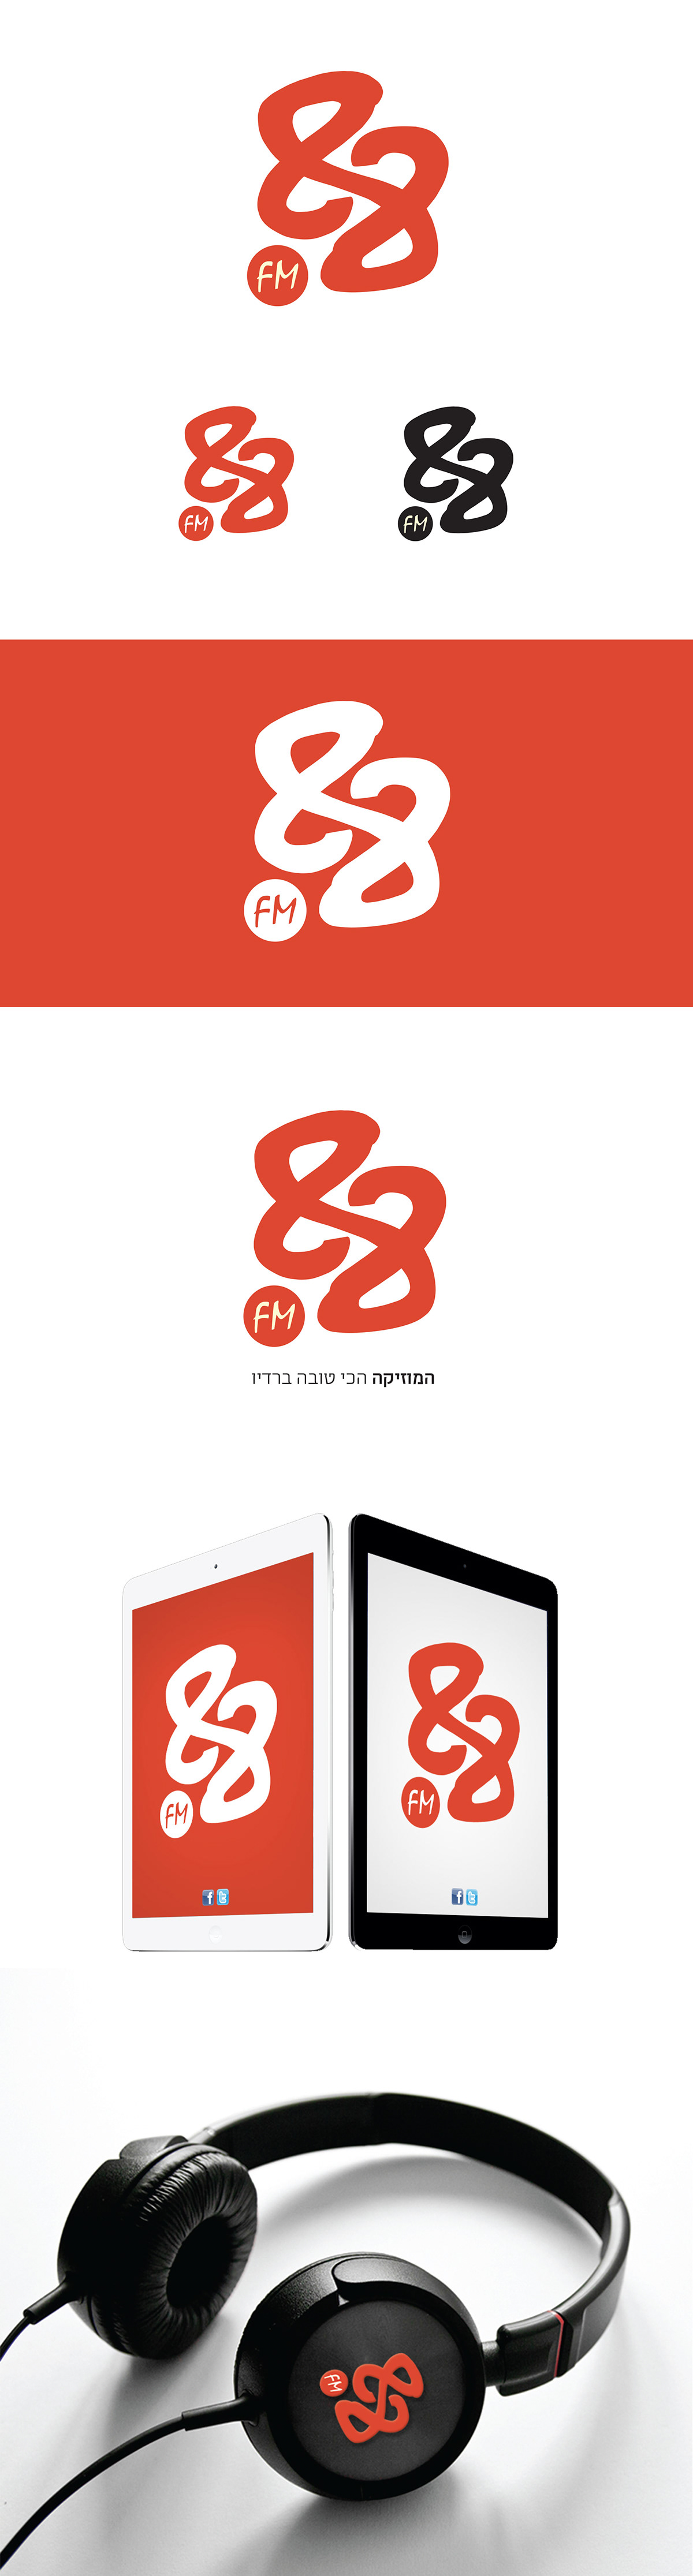 עיצוב לוגו טיפוגרפיה ויצו חיפה עיצוב טיפוגרפי